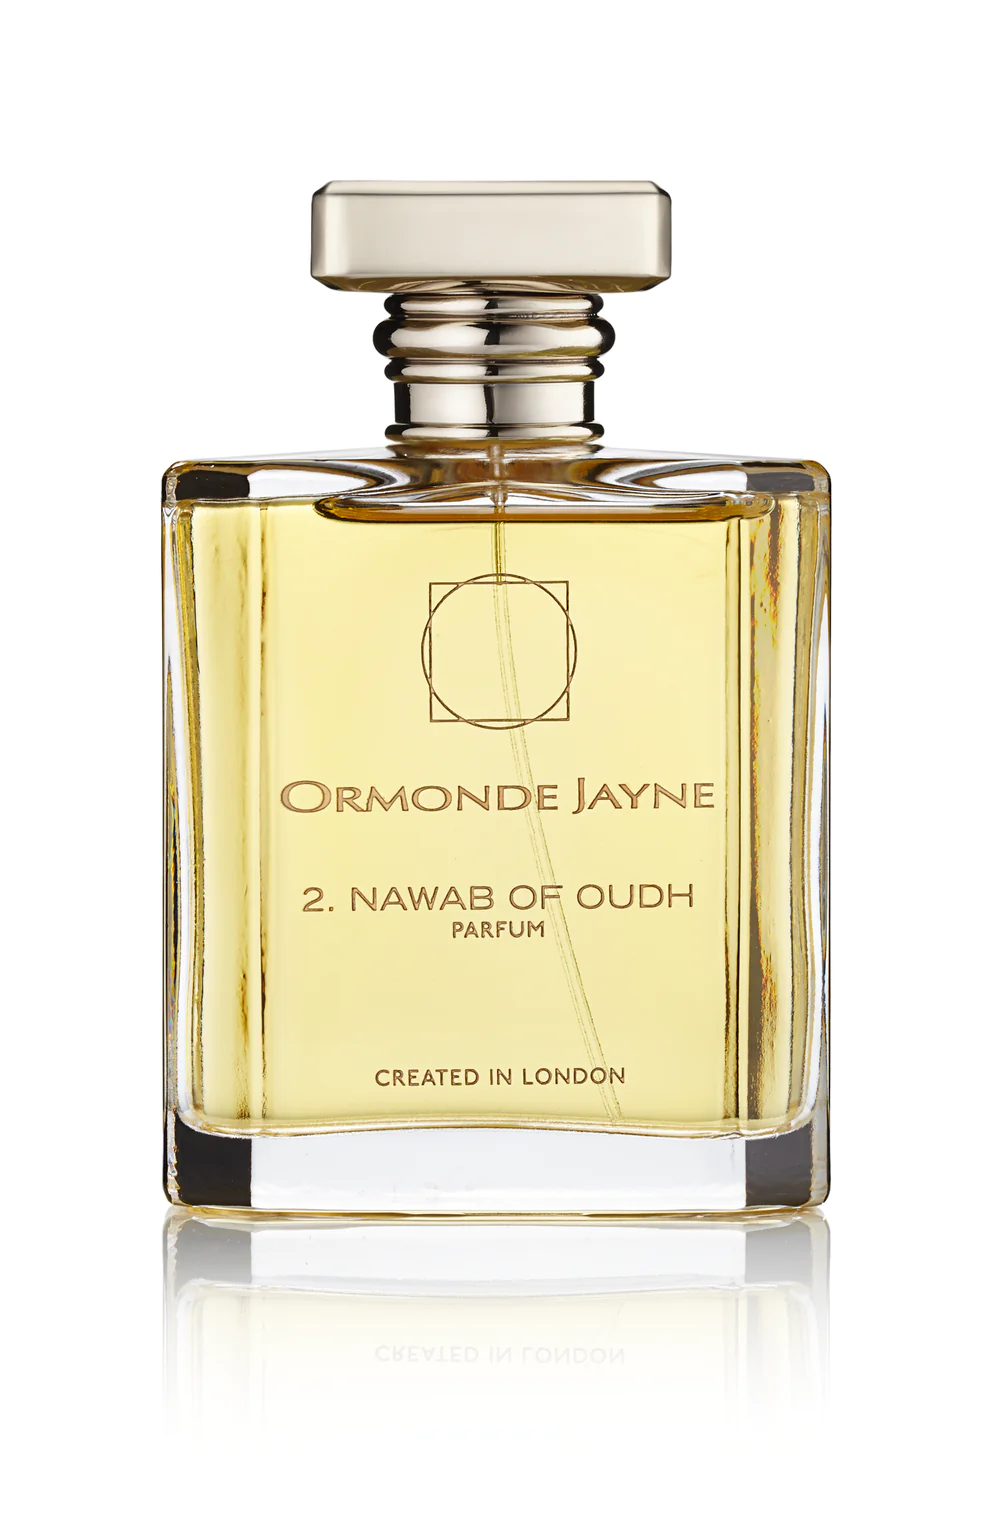 Ormonde Jayne - 2. Nawab of Oudh - Parfum